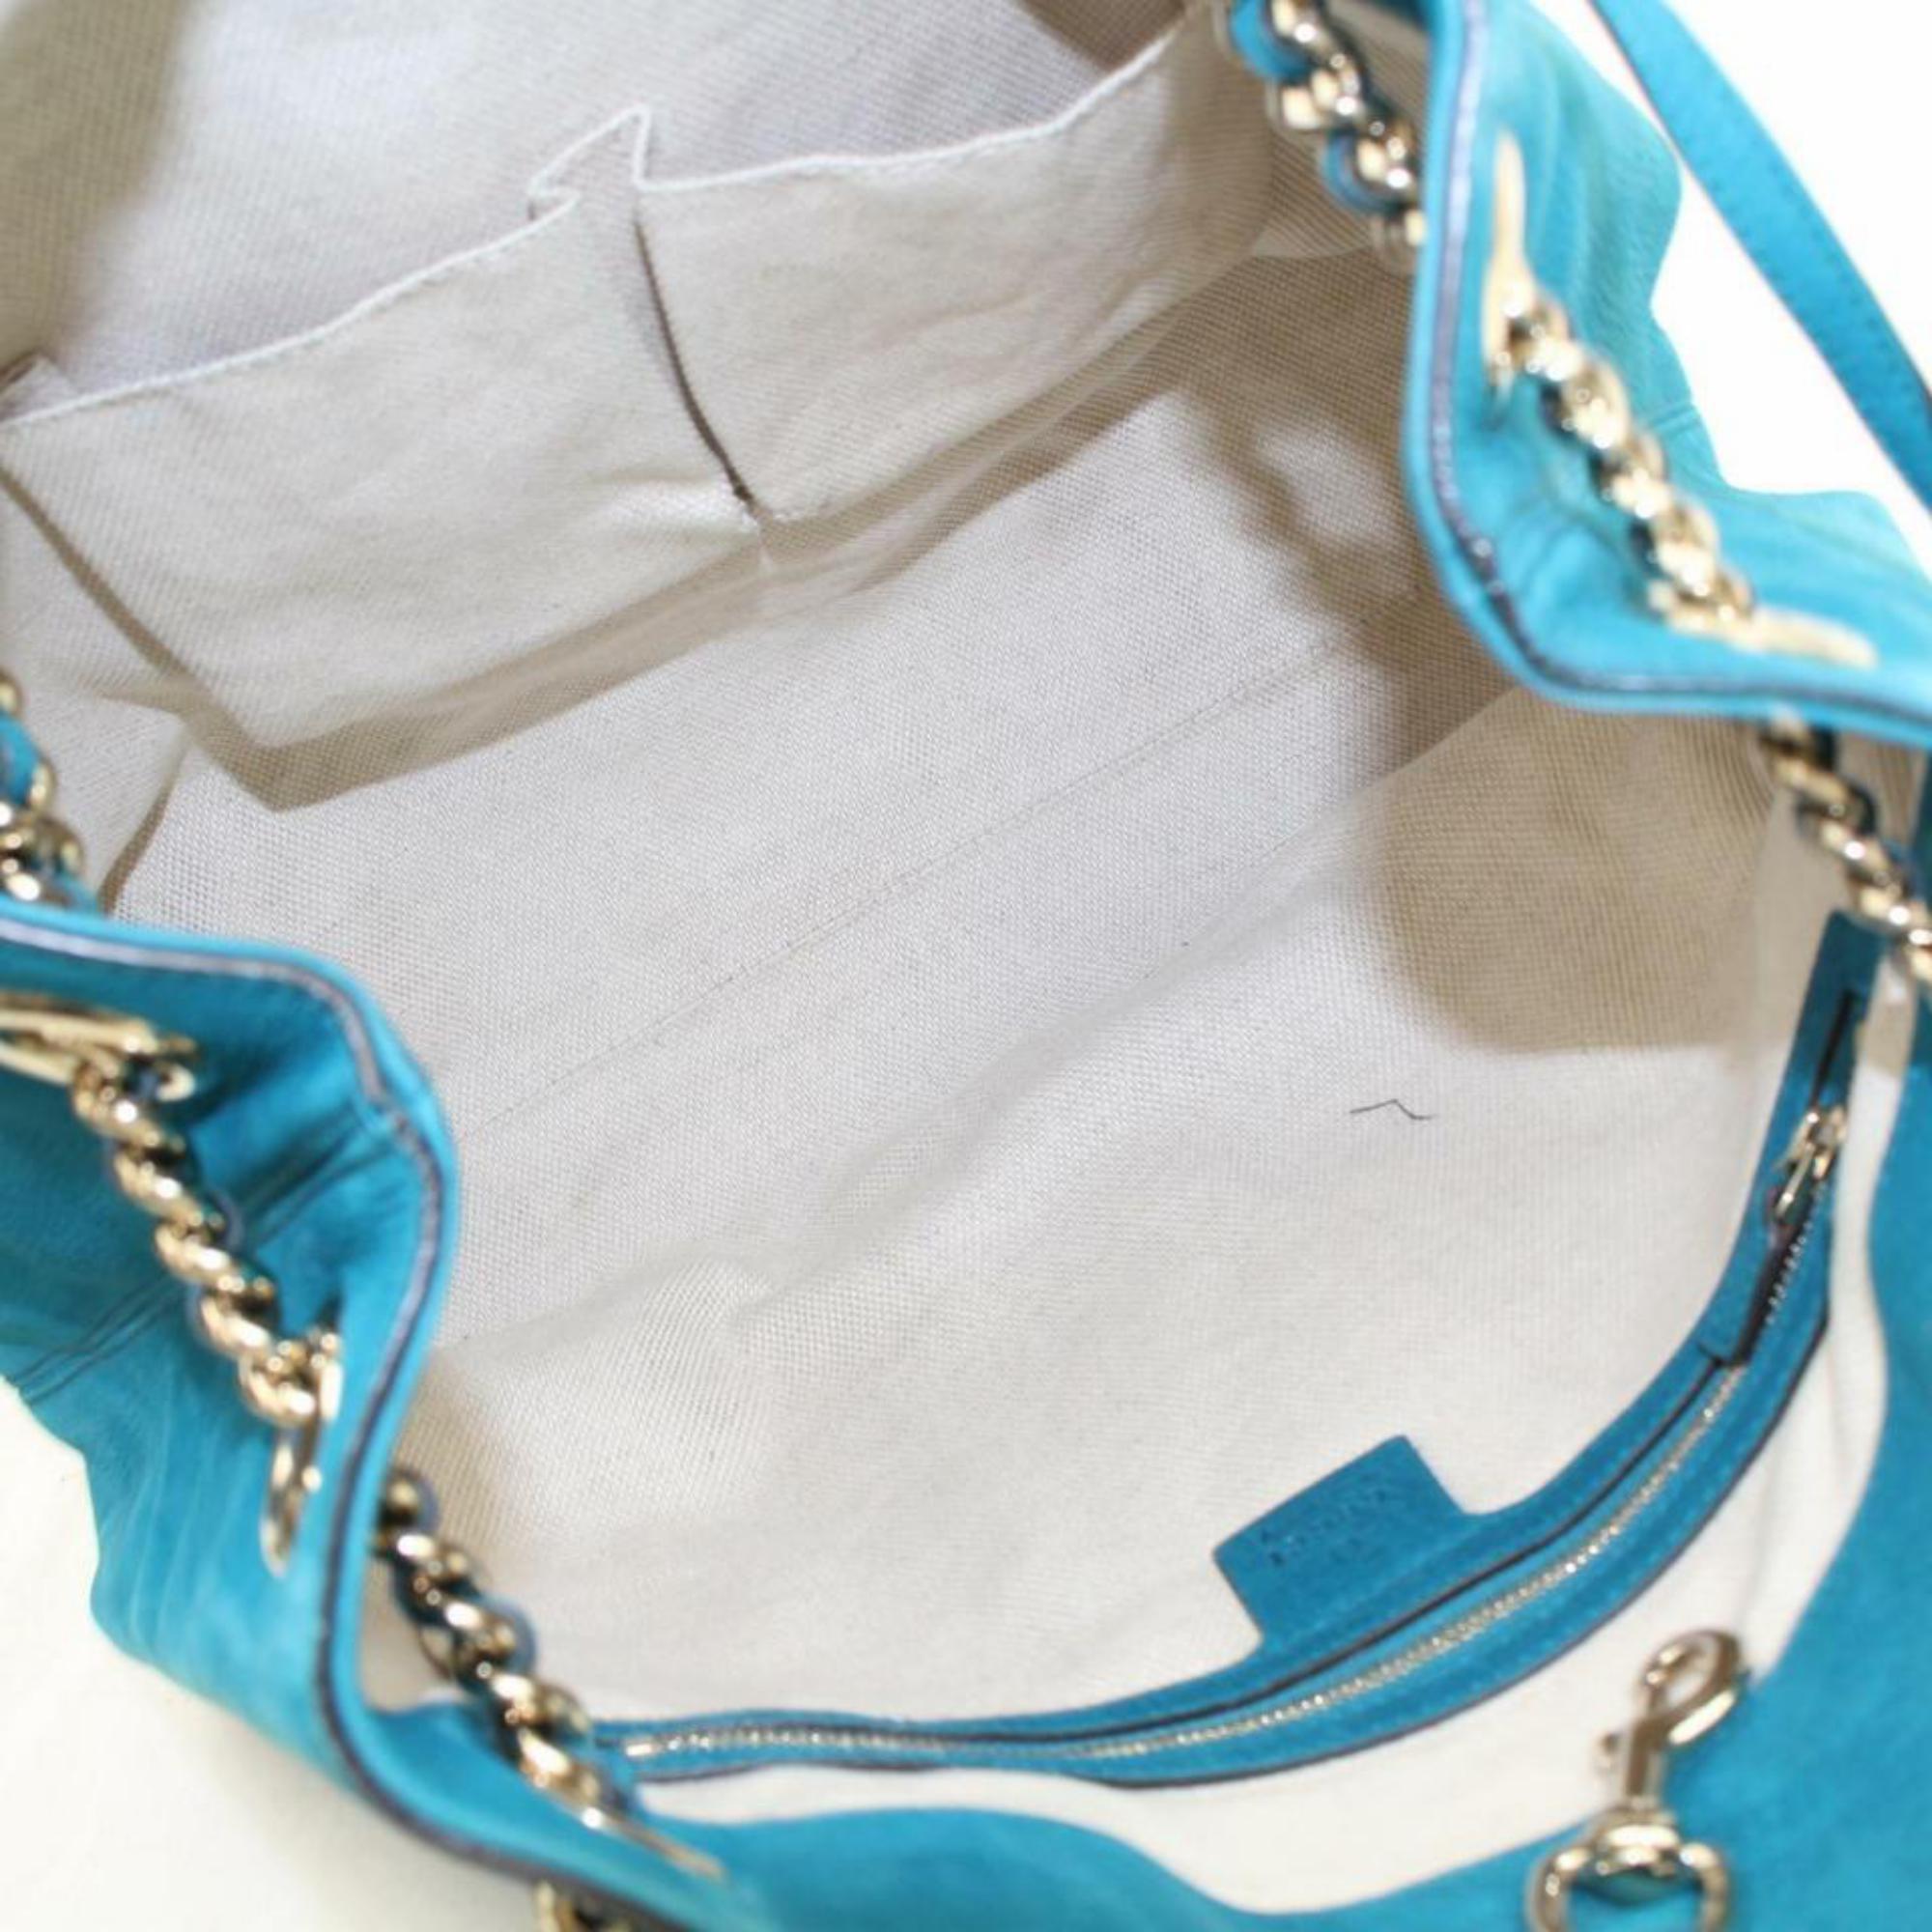 Gucci Soho Fringe Tassel Chain Tote 869786 Blue Nubuck Leather Shoulder Bag For Sale 6